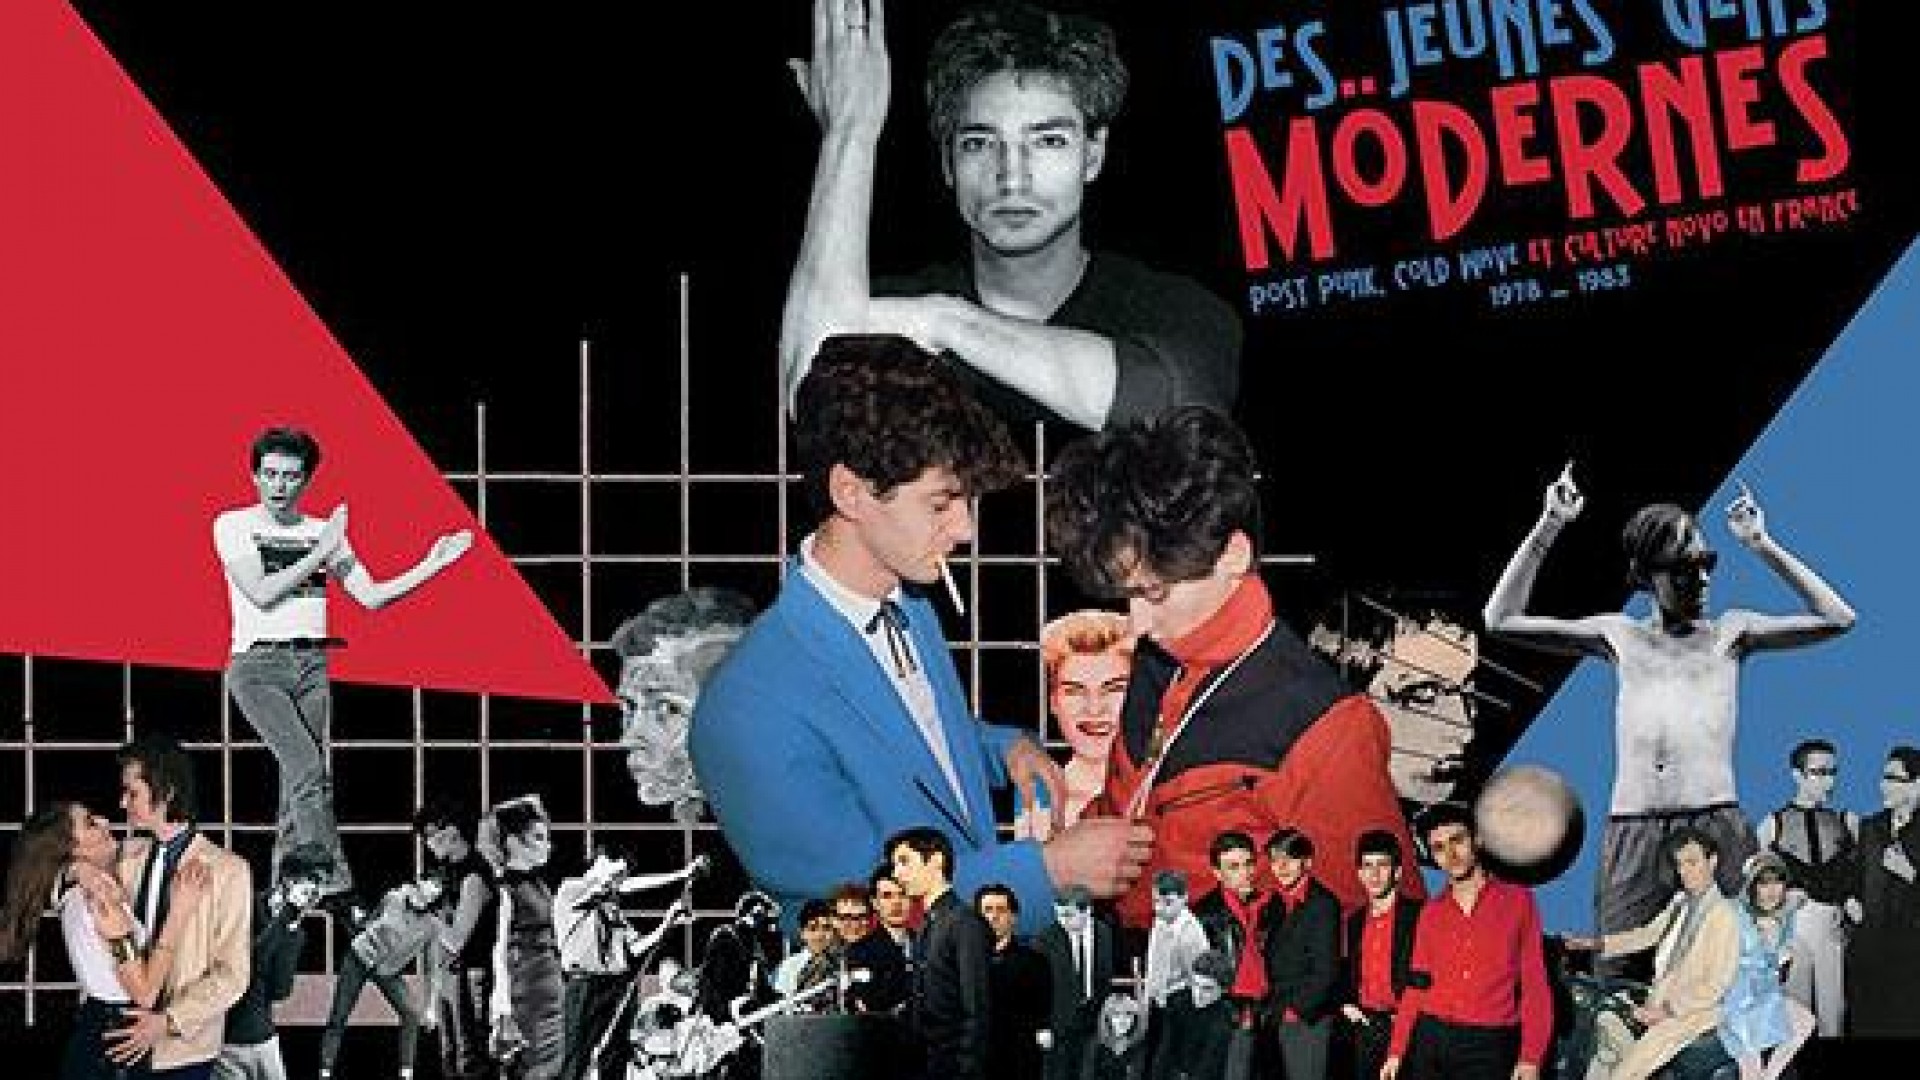 Des Jeunes Gens Mödernes - Post punk, cold wave et culture novö en France 1978/1983